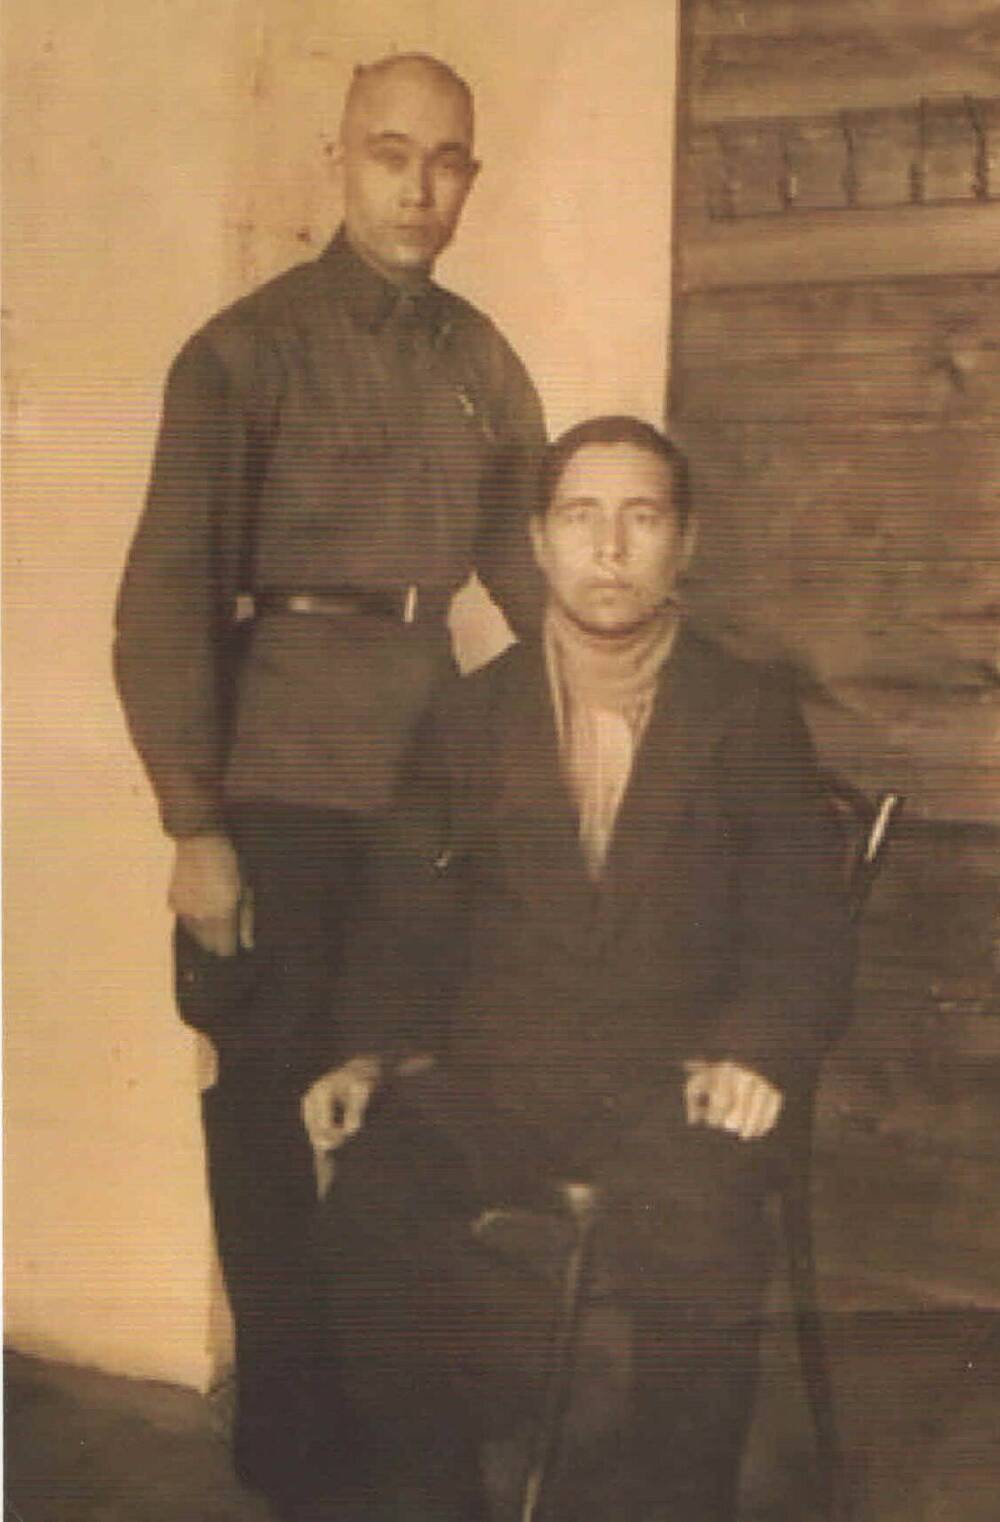 Фото. Петров Алексей Васильевич  (стоит, 1908-1943) вместе с мужчиной.